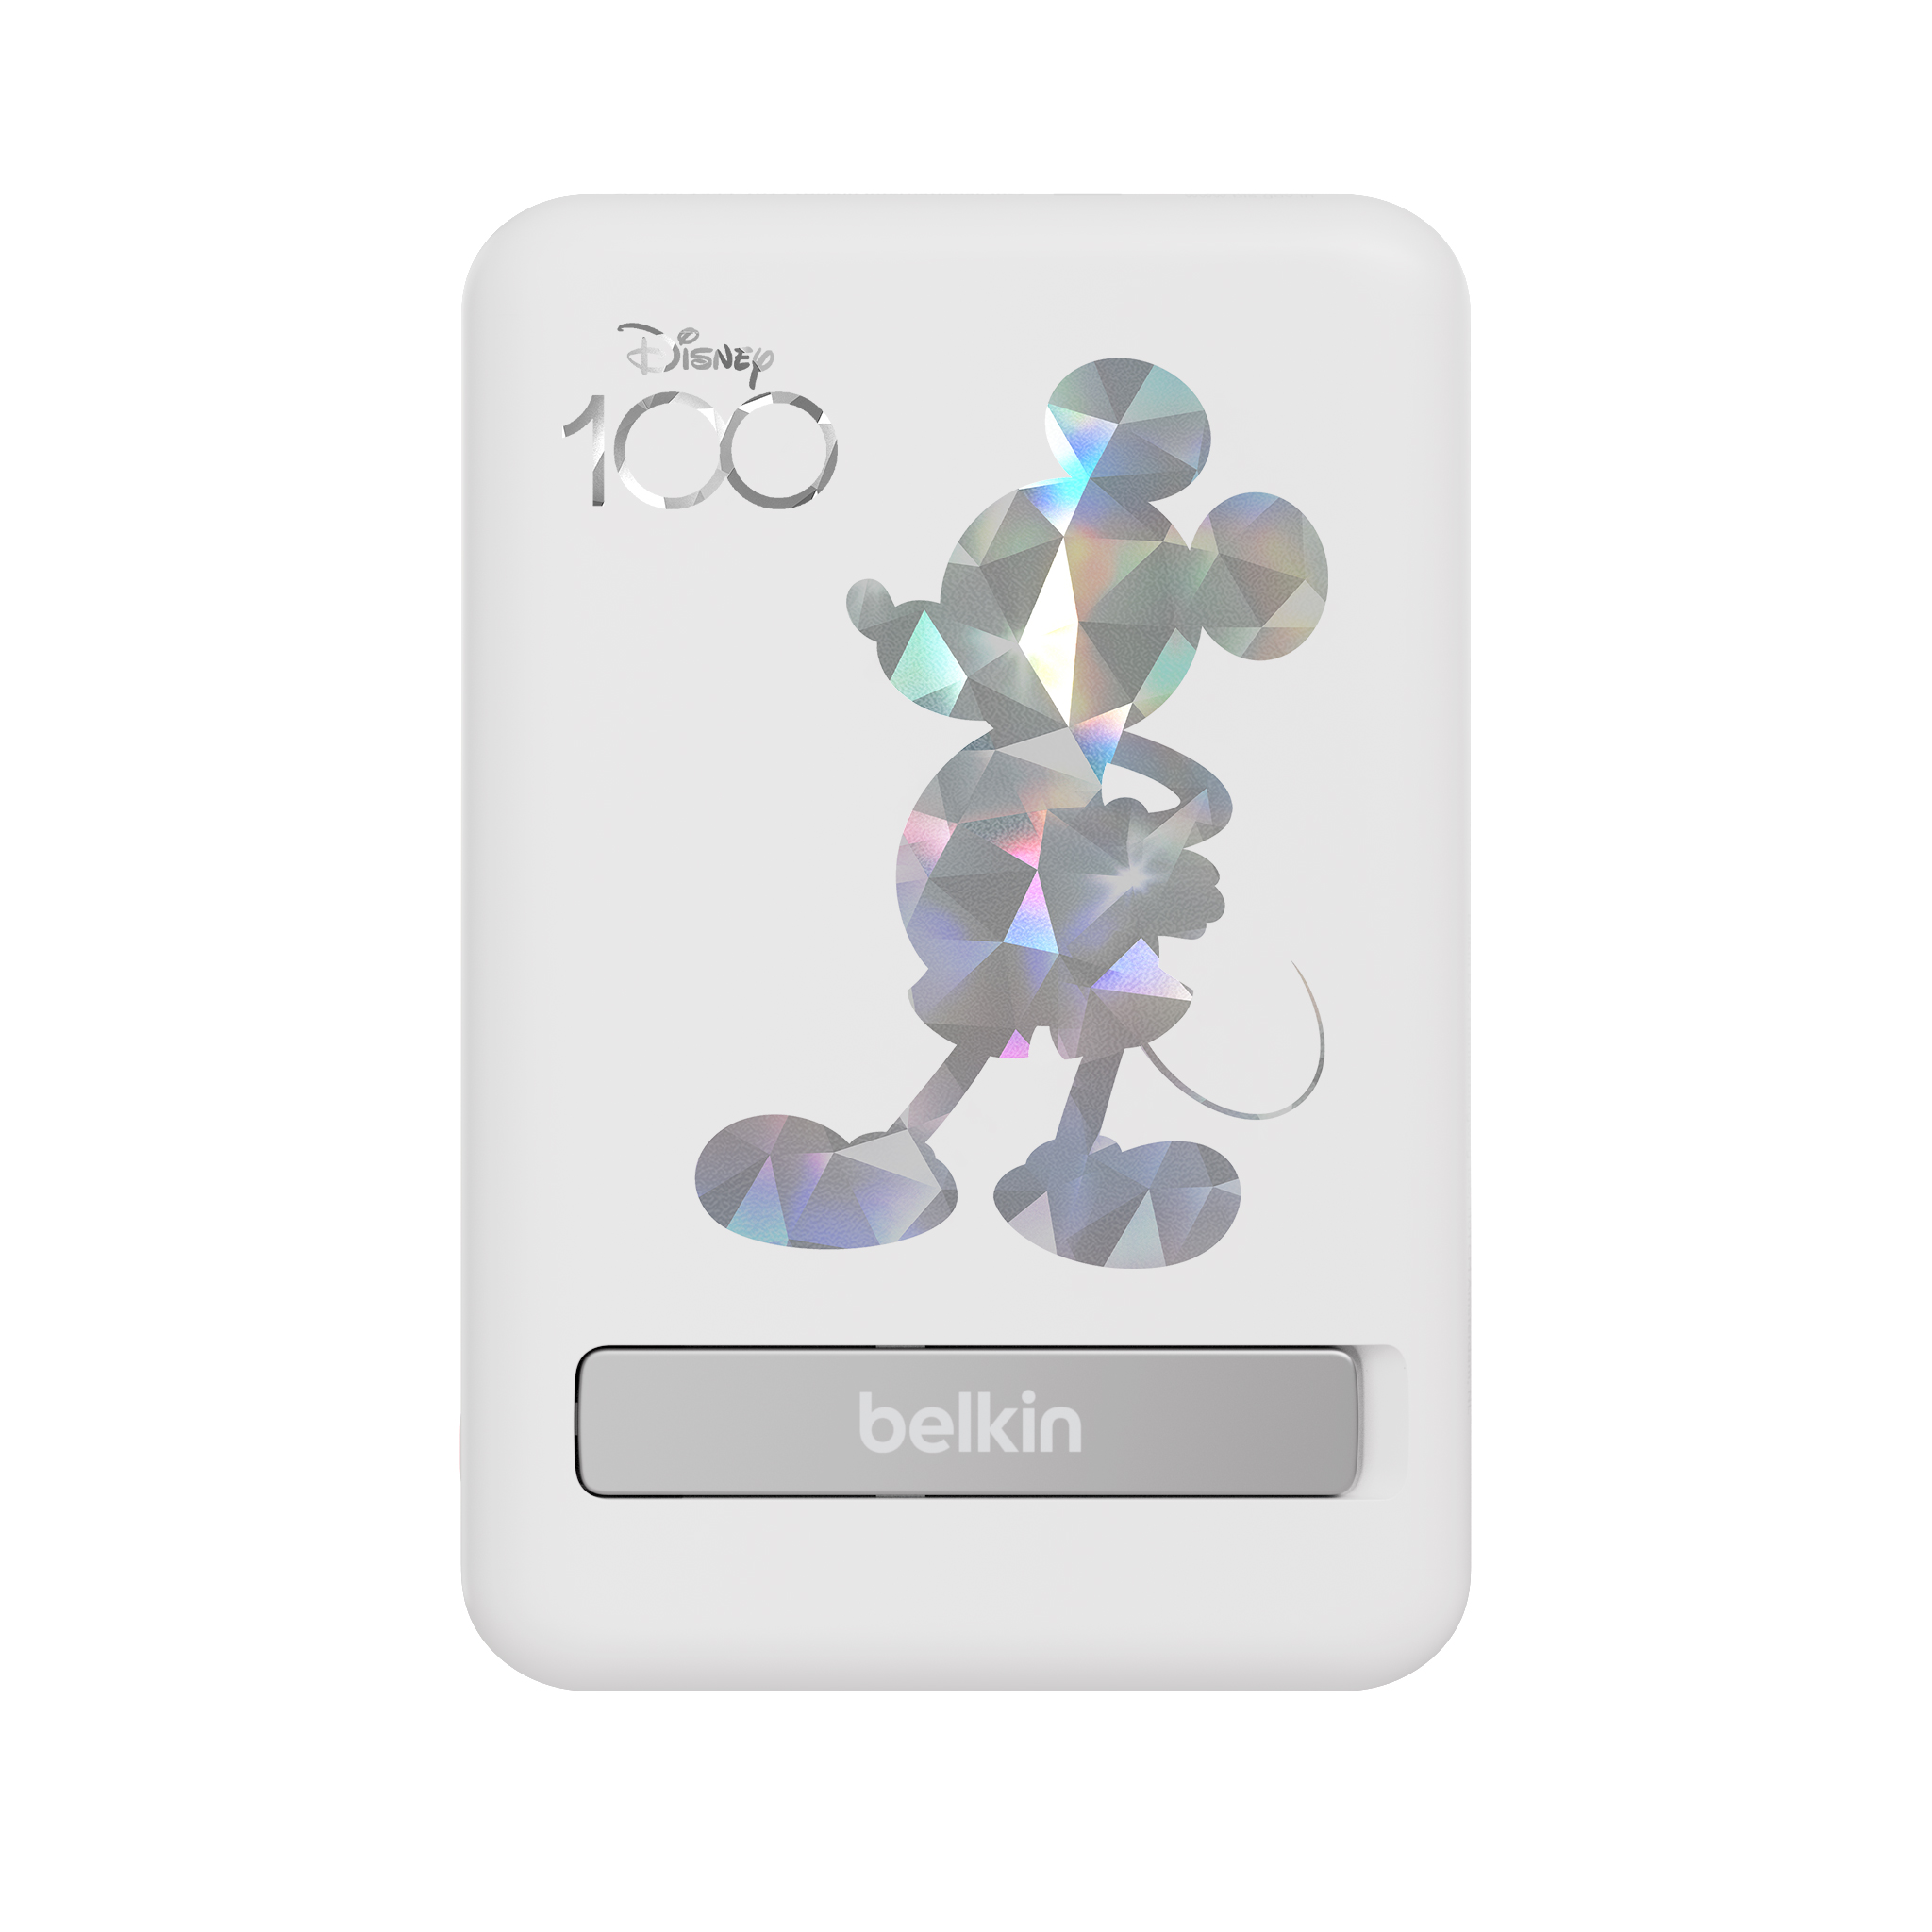 Belkin - BoostCharge 磁力無線行動充電器 5K+支架 (迪士尼系列) (迪士尼一百周年), , large image number 0